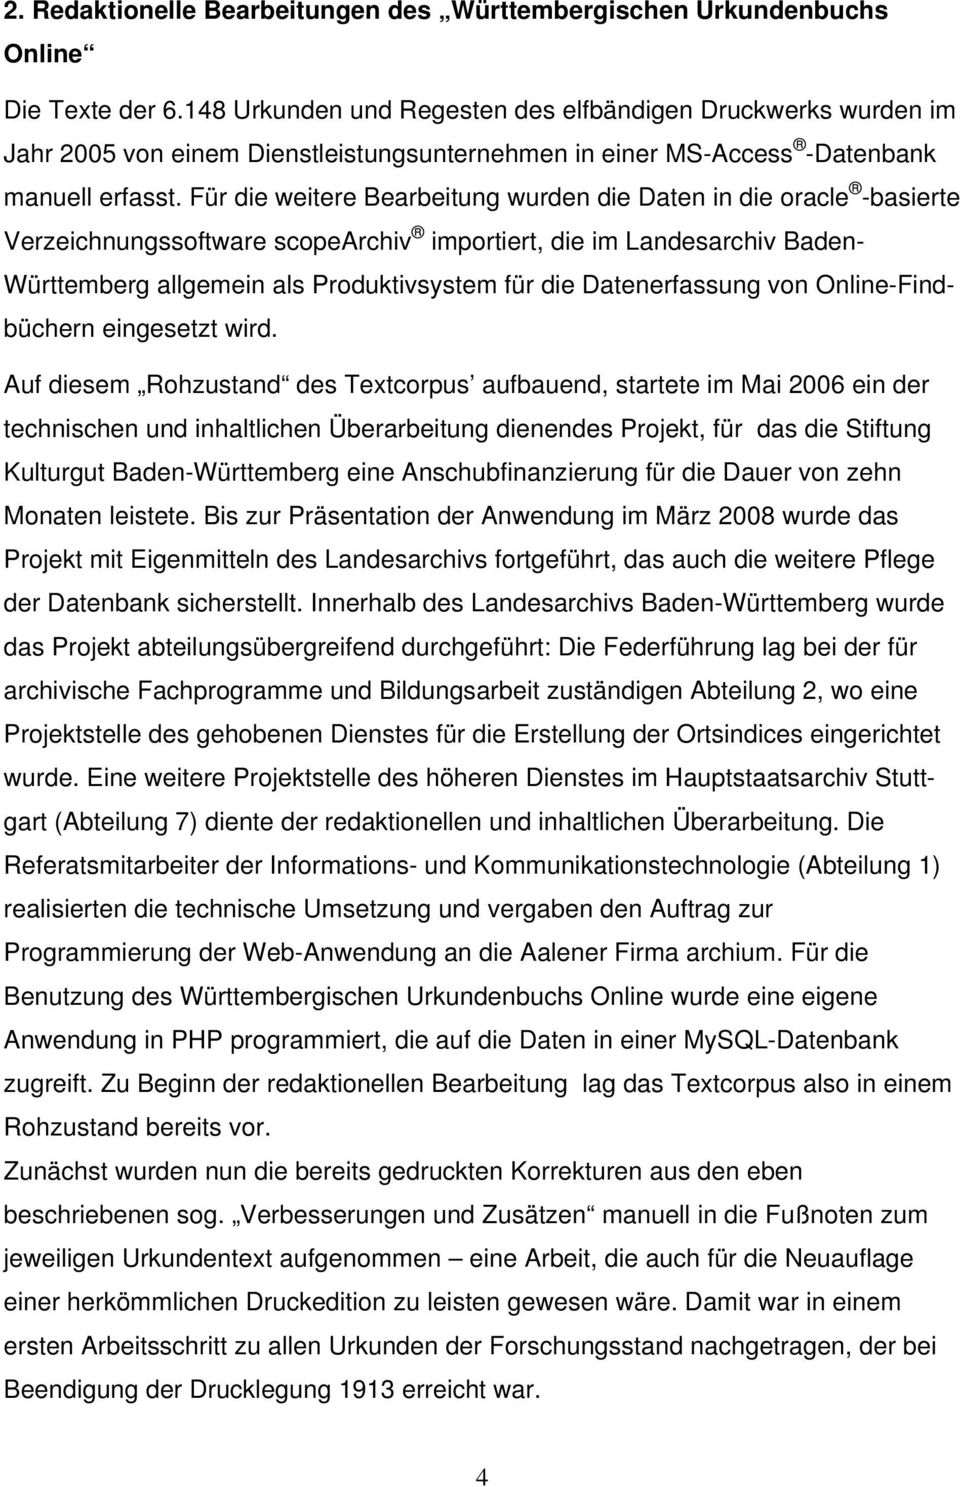 Für die weitere Bearbeitung wurden die Daten in die oracle -basierte Verzeichnungssoftware scopearchiv importiert, die im Landesarchiv Baden- Württemberg allgemein als Produktivsystem für die